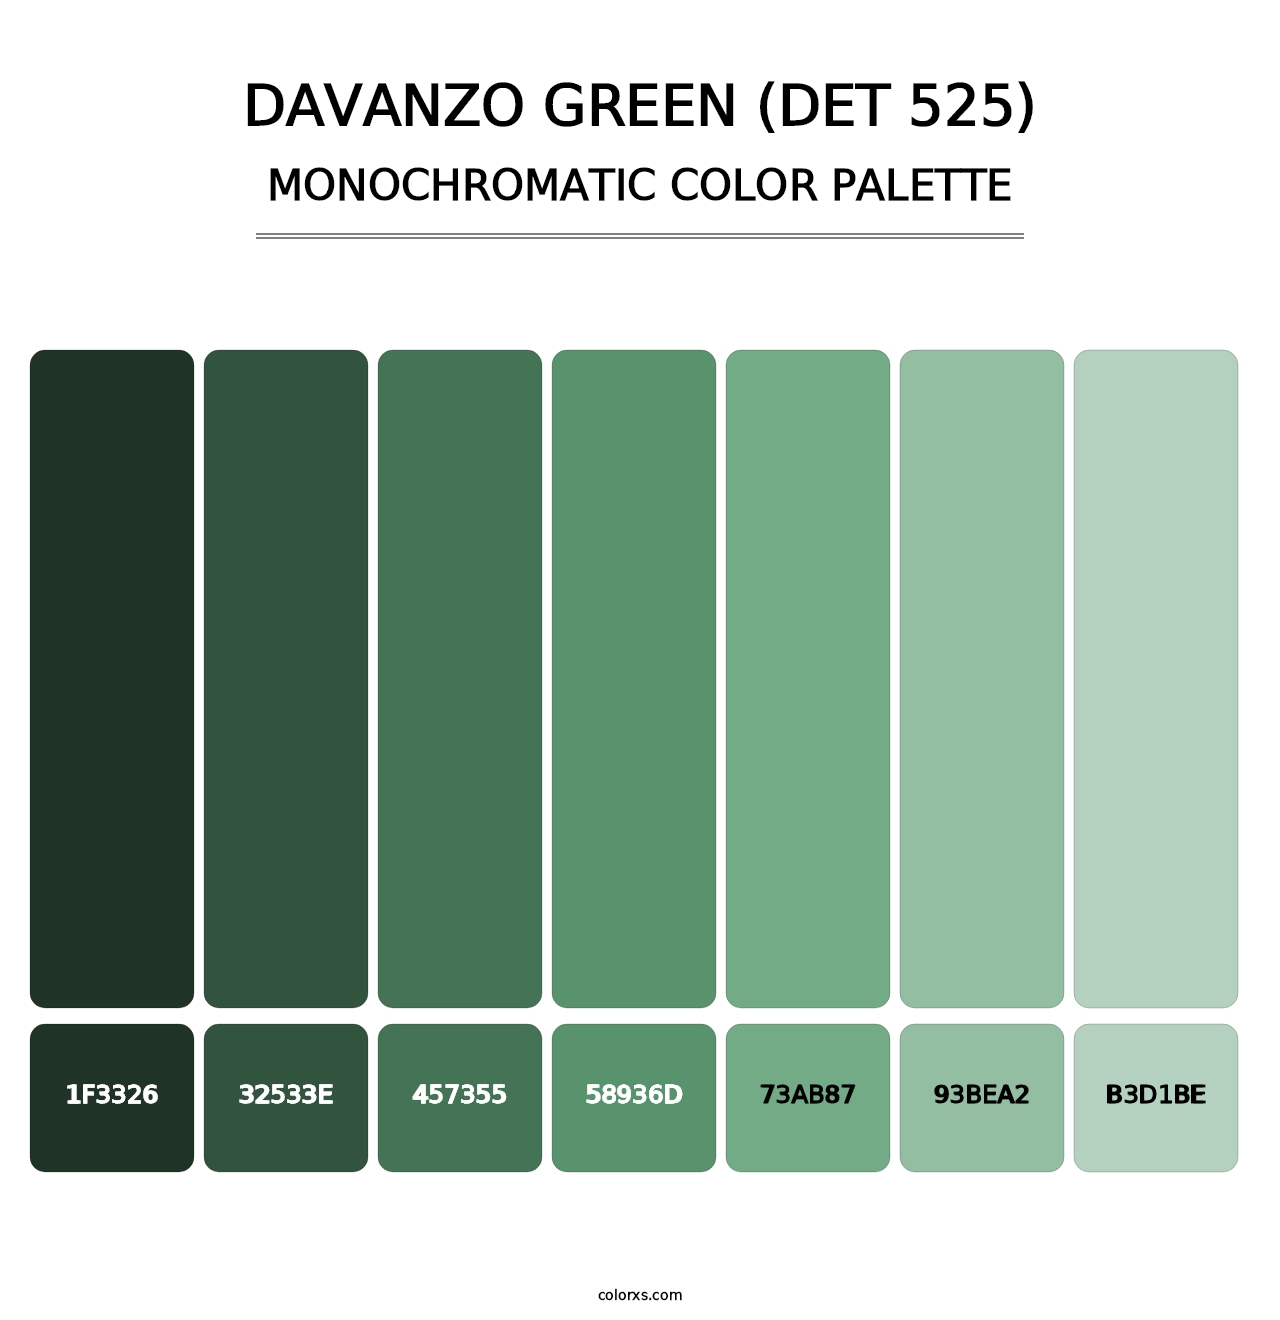 DaVanzo Green (DET 525) - Monochromatic Color Palette